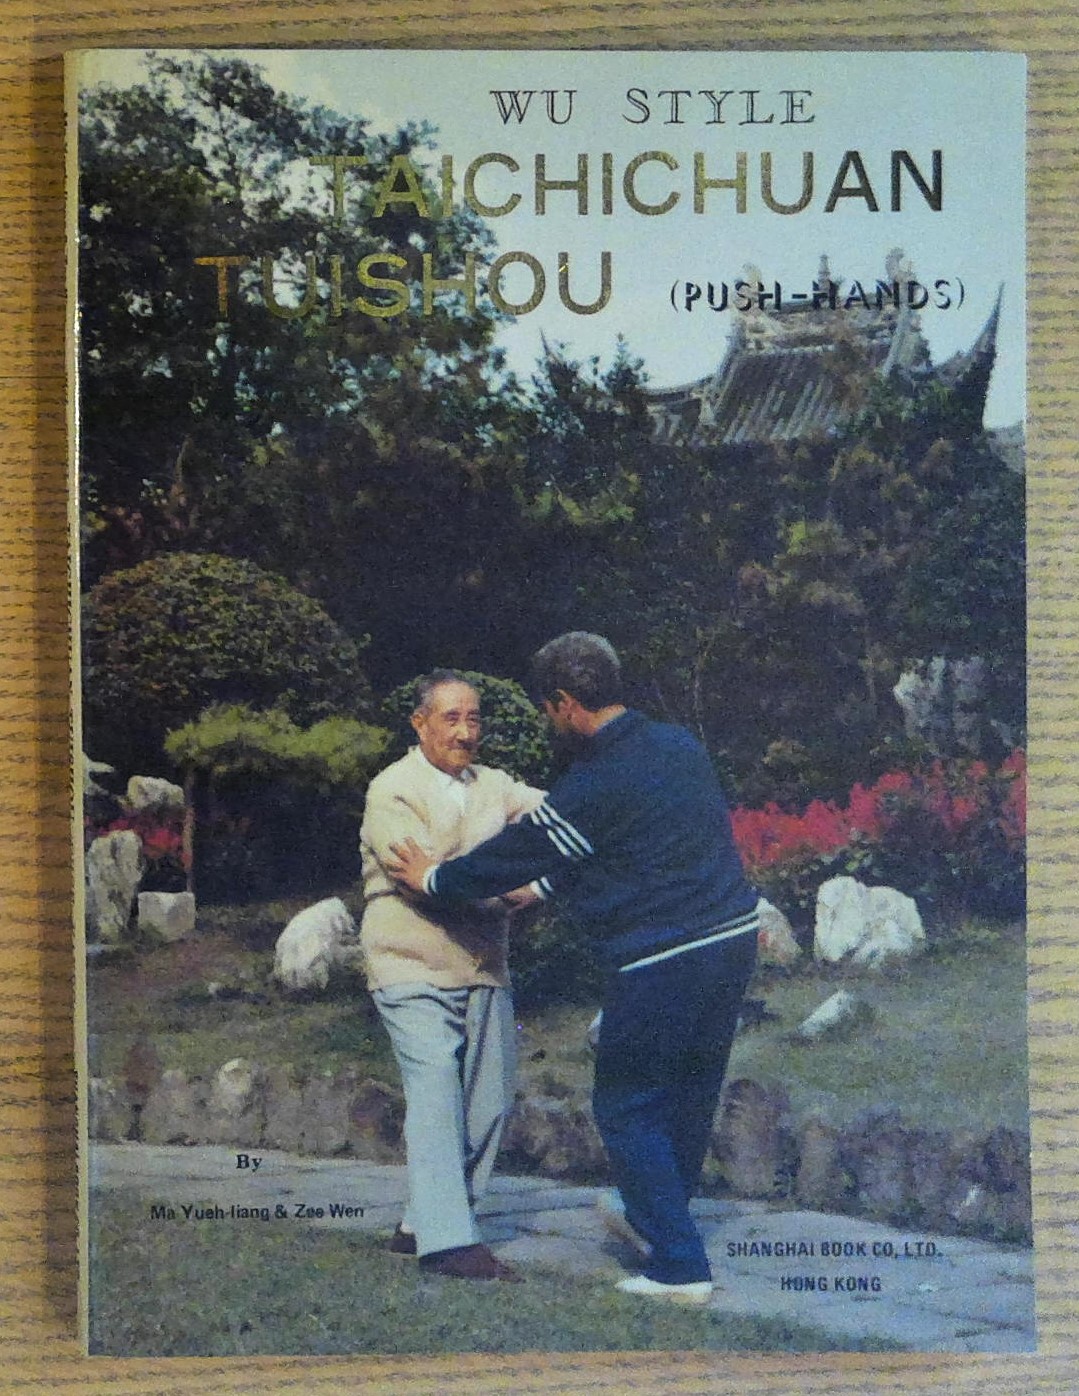 Wu Style Taichichuan Tuishou (Push-hands)